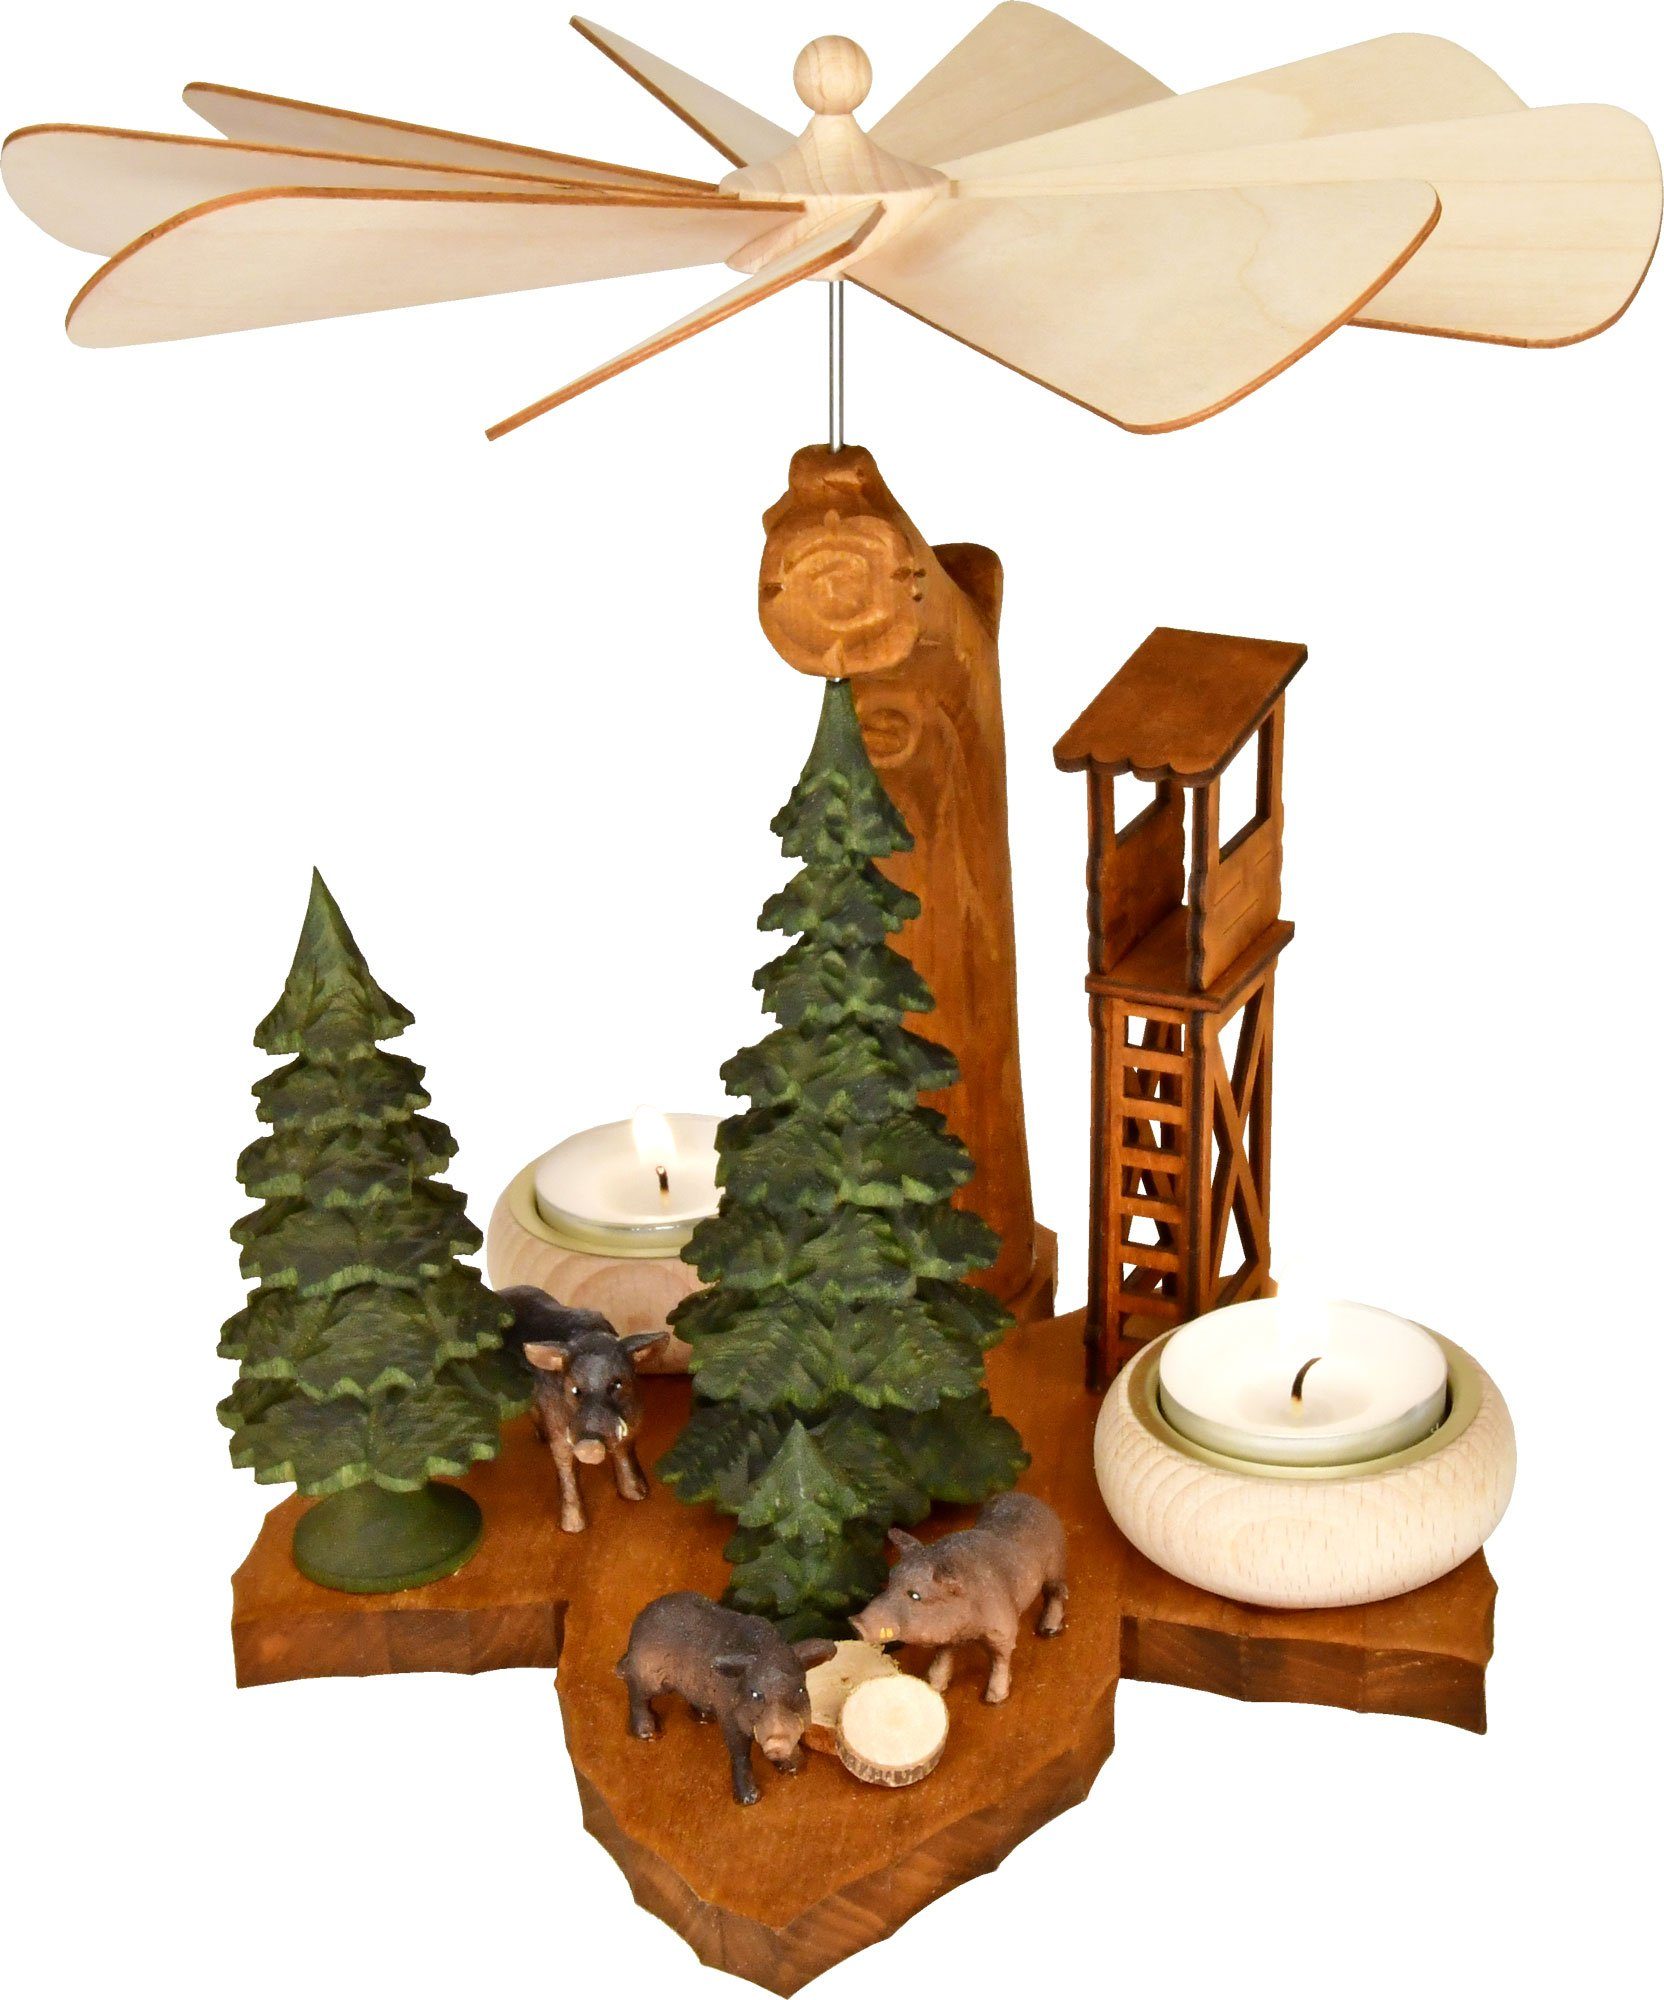 Höhe aus 26 cm, ca. Erzgebirge RATAGS für Massivholz-Blattpyramide, Teelichte, dem Handarbeit Wildsau Weihnachtspyramide